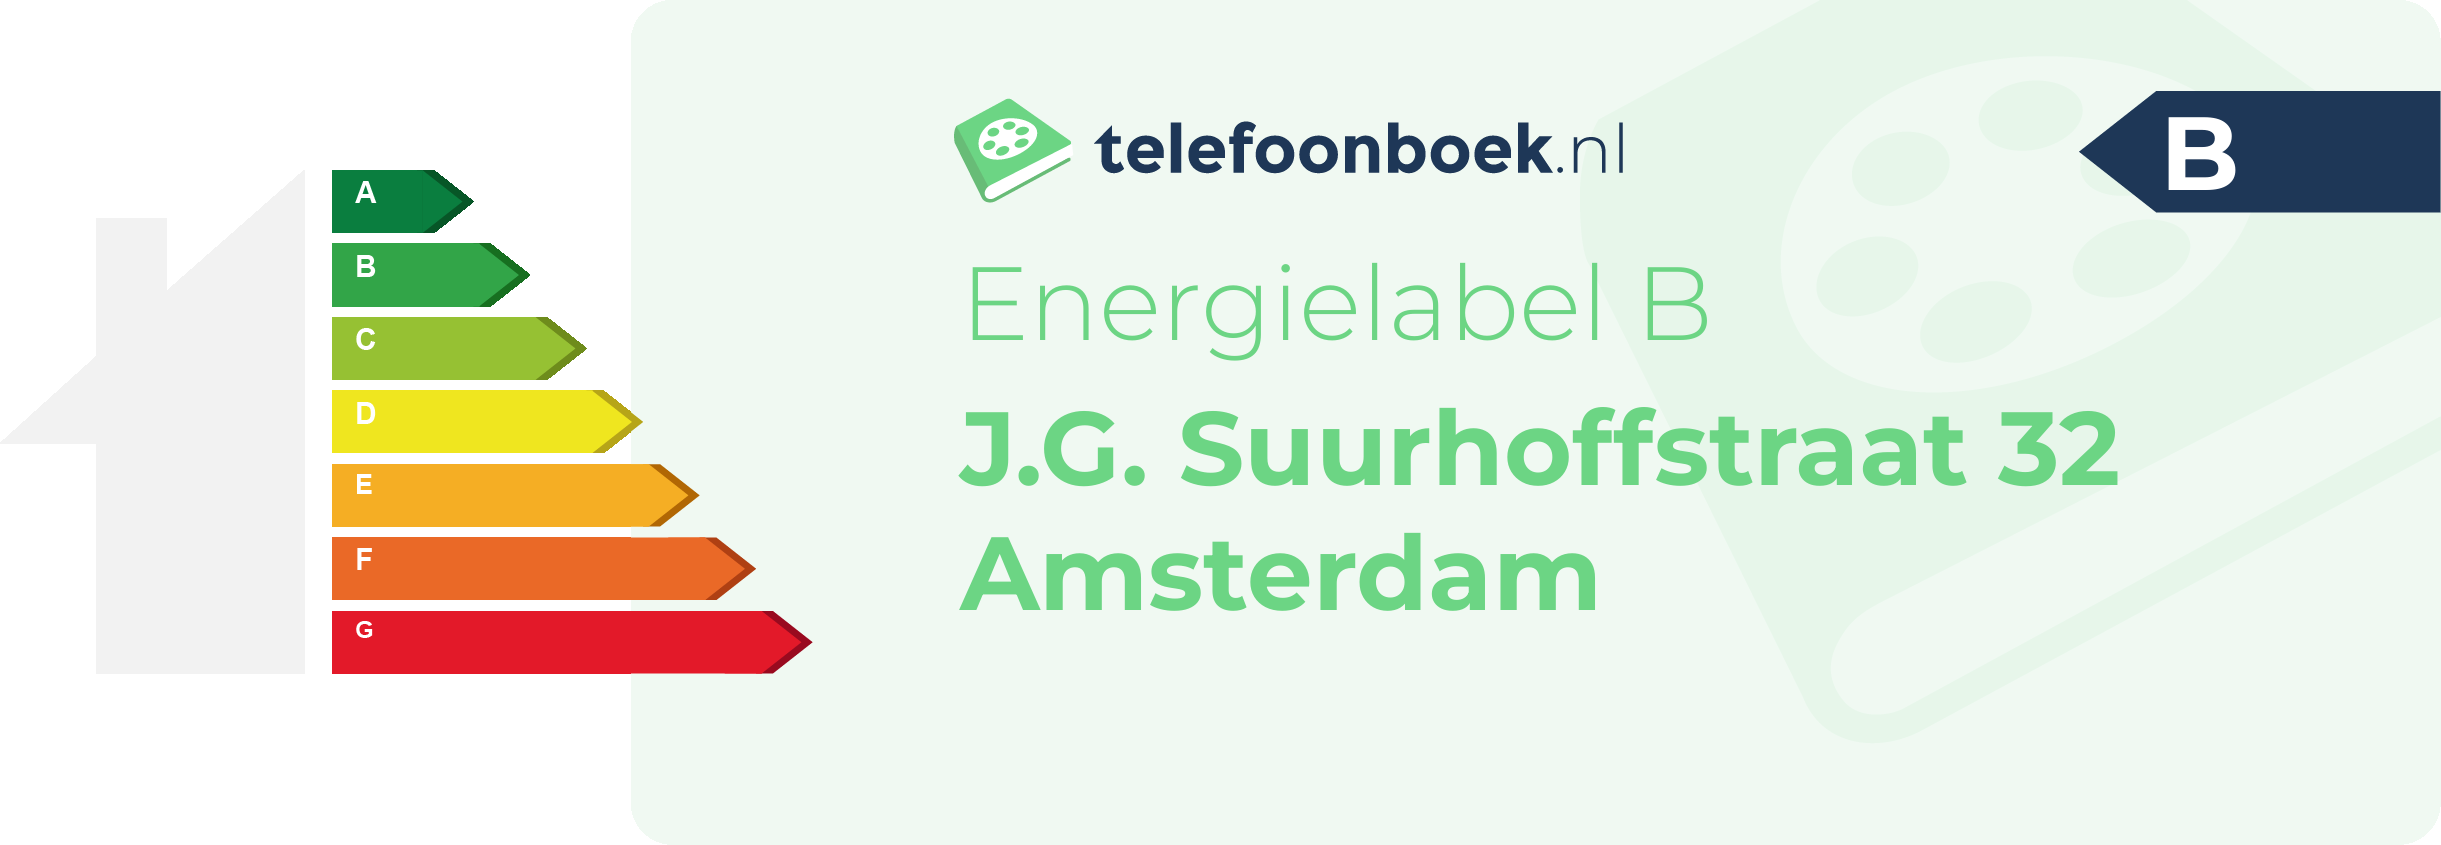 Energielabel J.G. Suurhoffstraat 32 Amsterdam